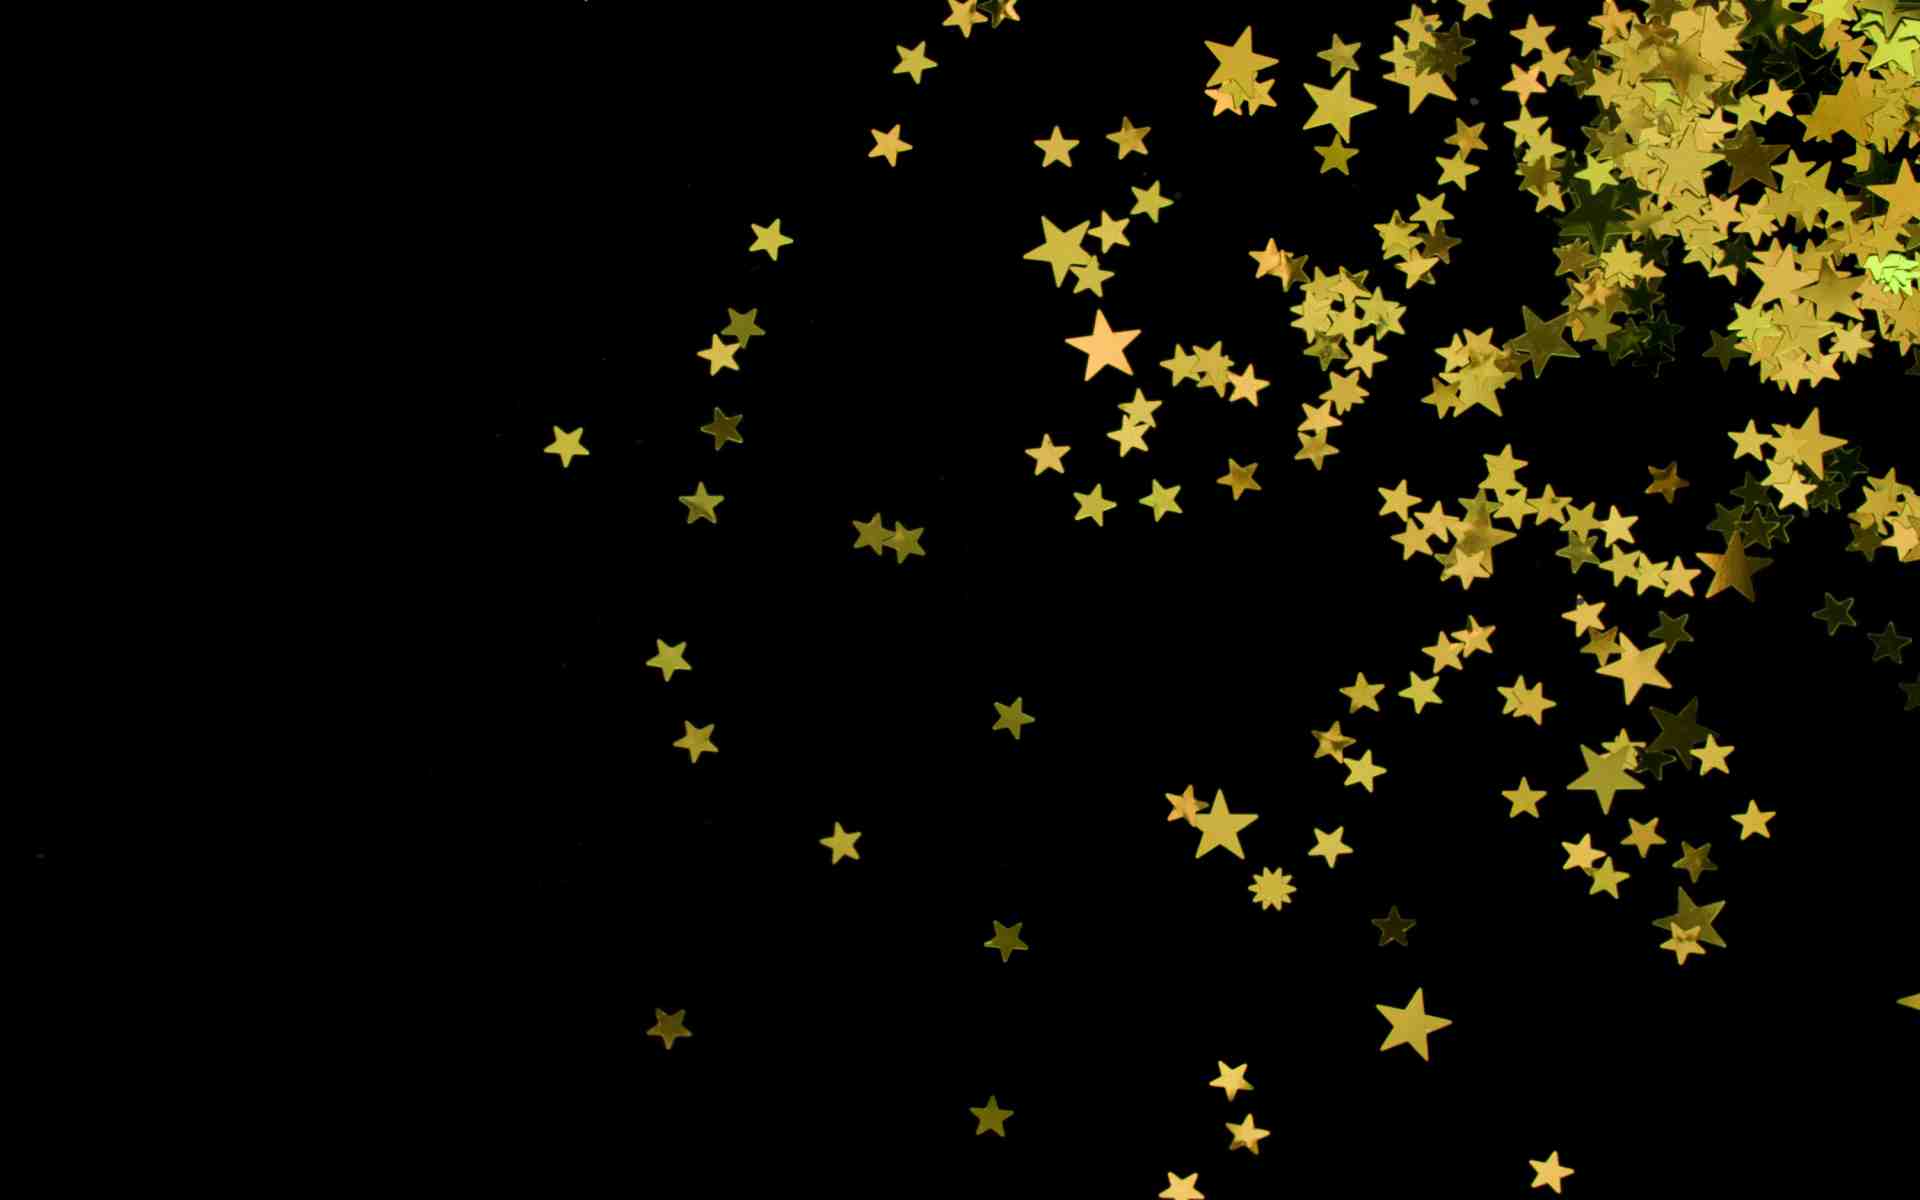 Tải hình nền ngôi sao đẹp cực chất cho máy tính - Hình 6